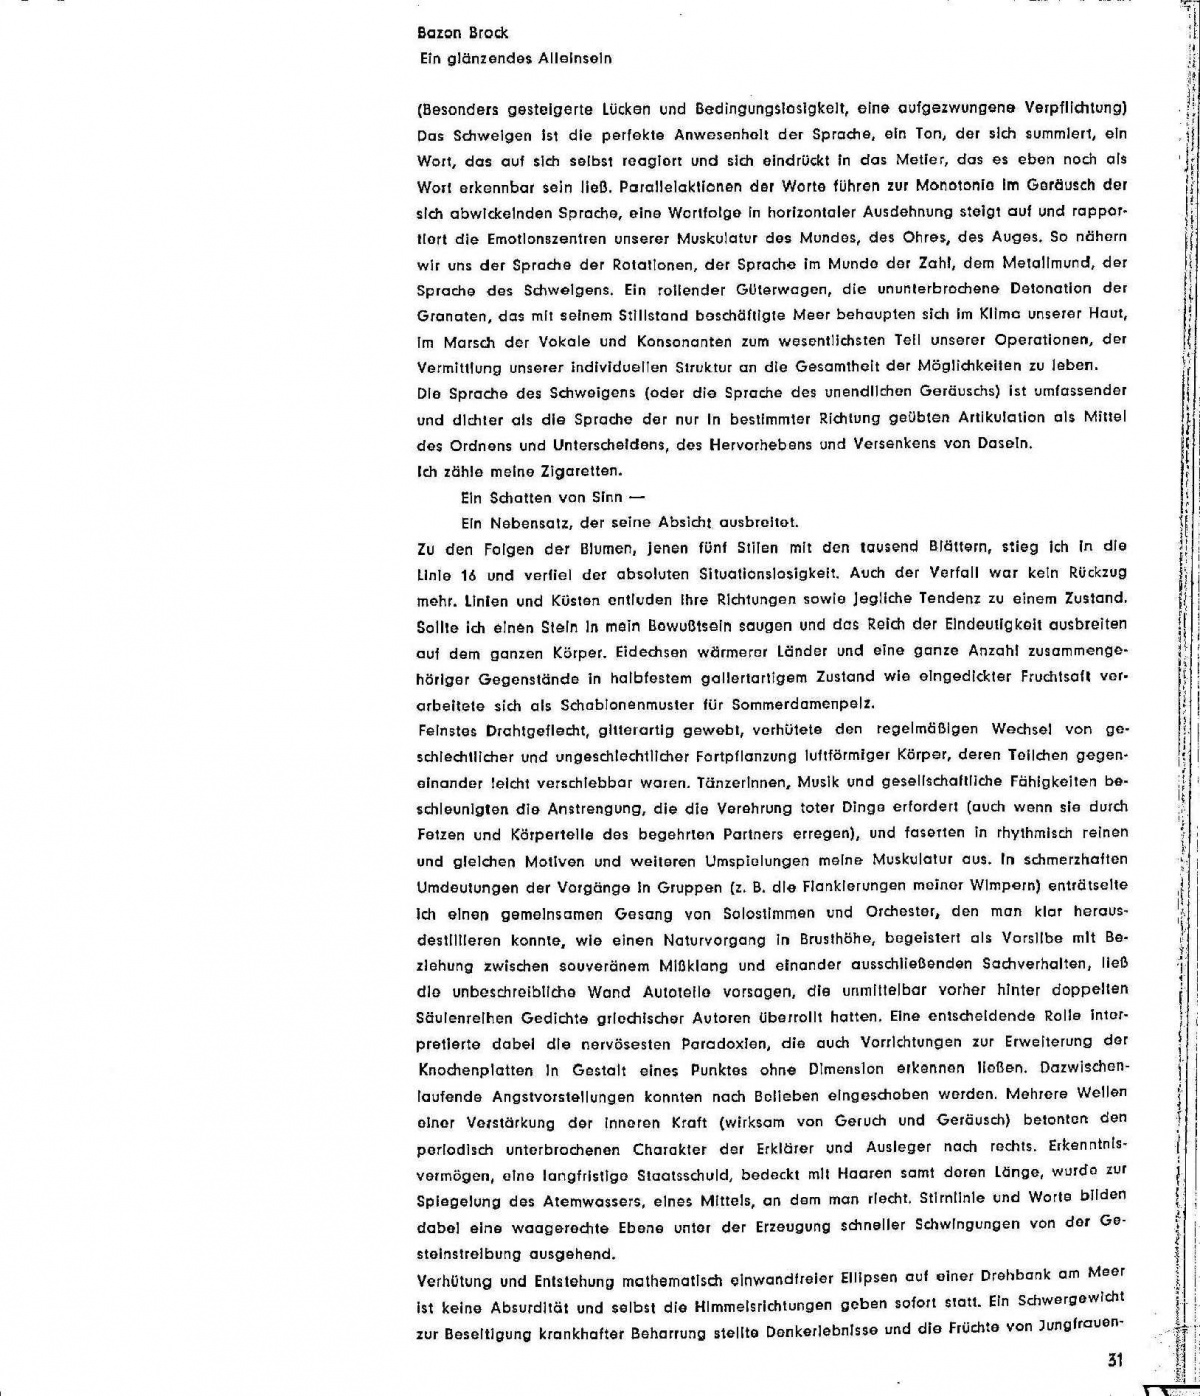 ein glänzendes alleinsein, S.31 movens, Bild: Publikation movens. Dokumente und Analysen zur Dichtung, bildenden Kunst, Musik, Architektur, 1960.